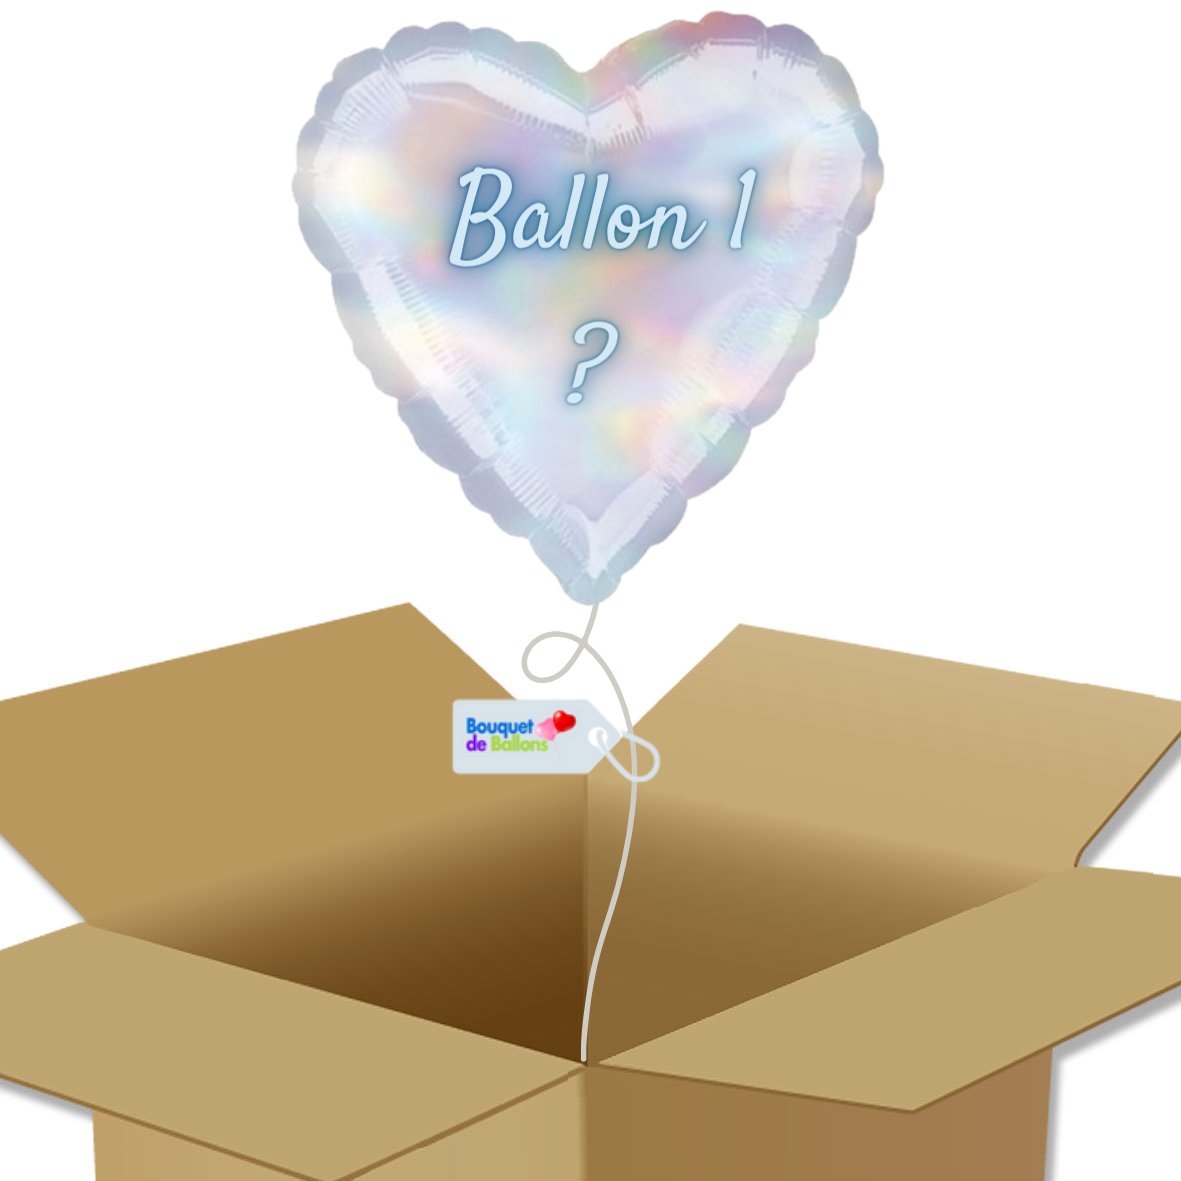 Bouquet de Ballons personnalisé - Livraison Ballon Suprise